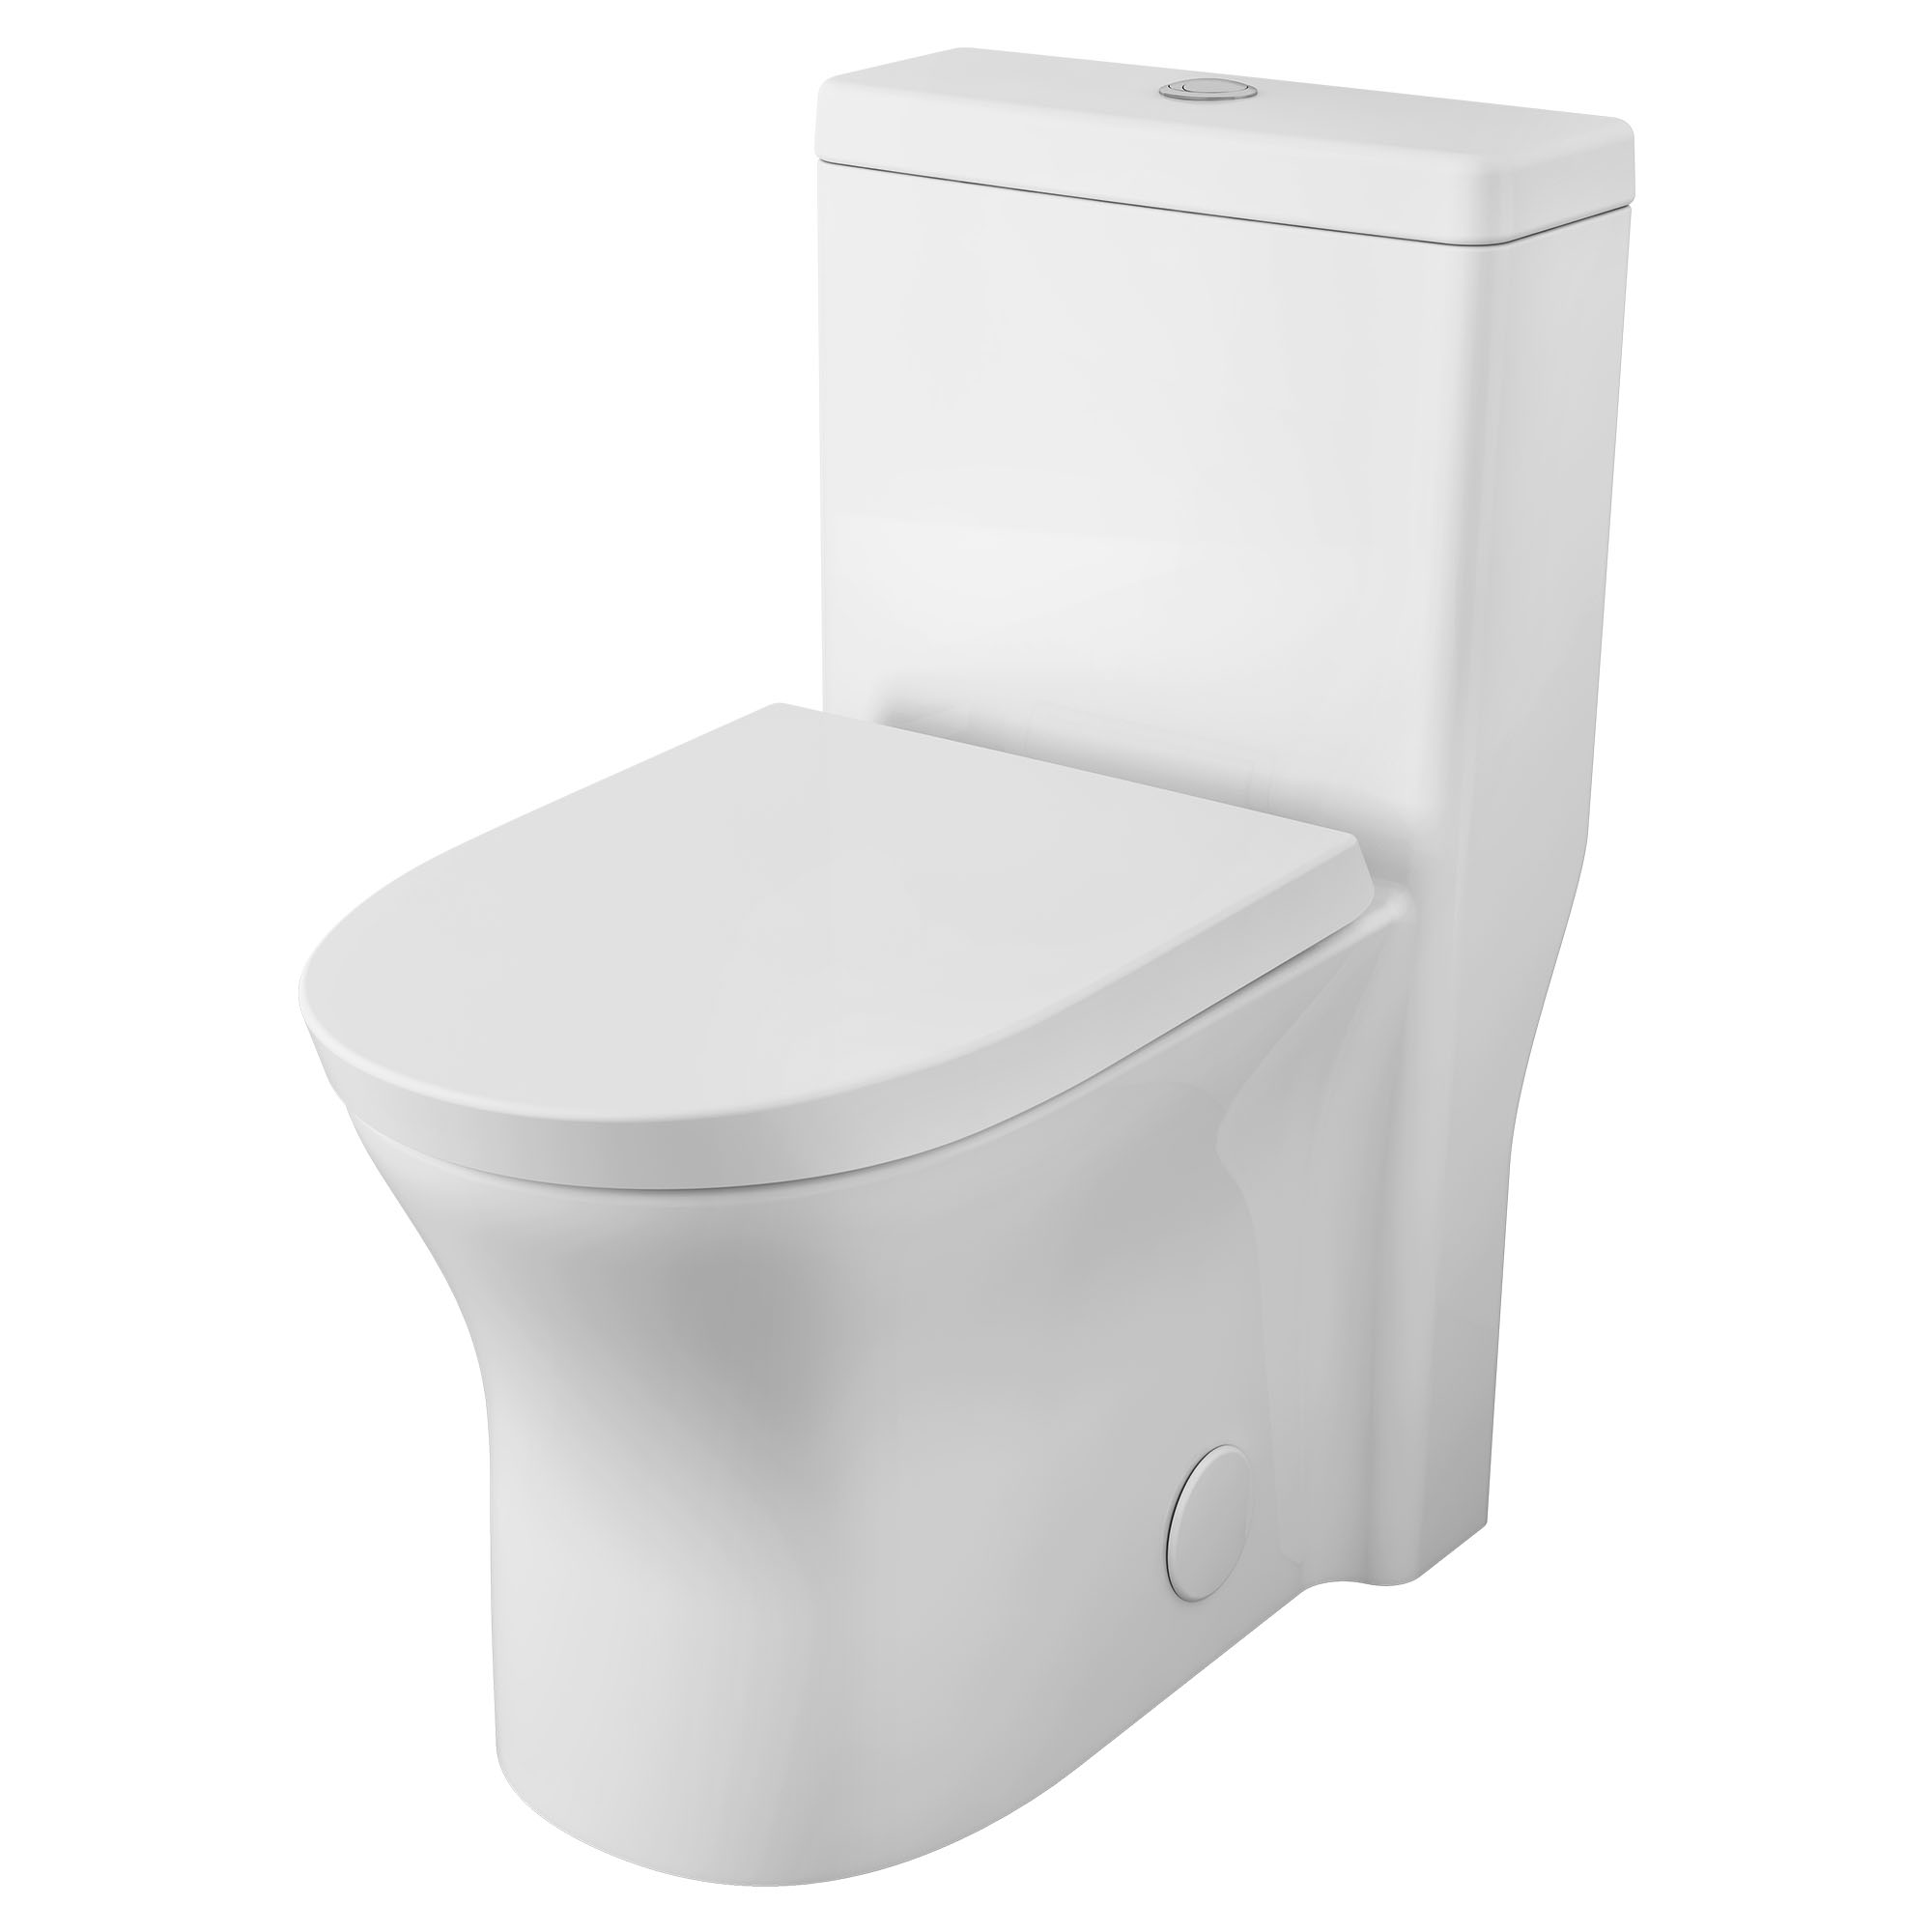 Toilette Cosette complète allongée avec siège, hauteur régulière, à double chasse, monopièce, 1,28 gpc/4,8 Lpc et 0,92 gpc/3,5 Lpc